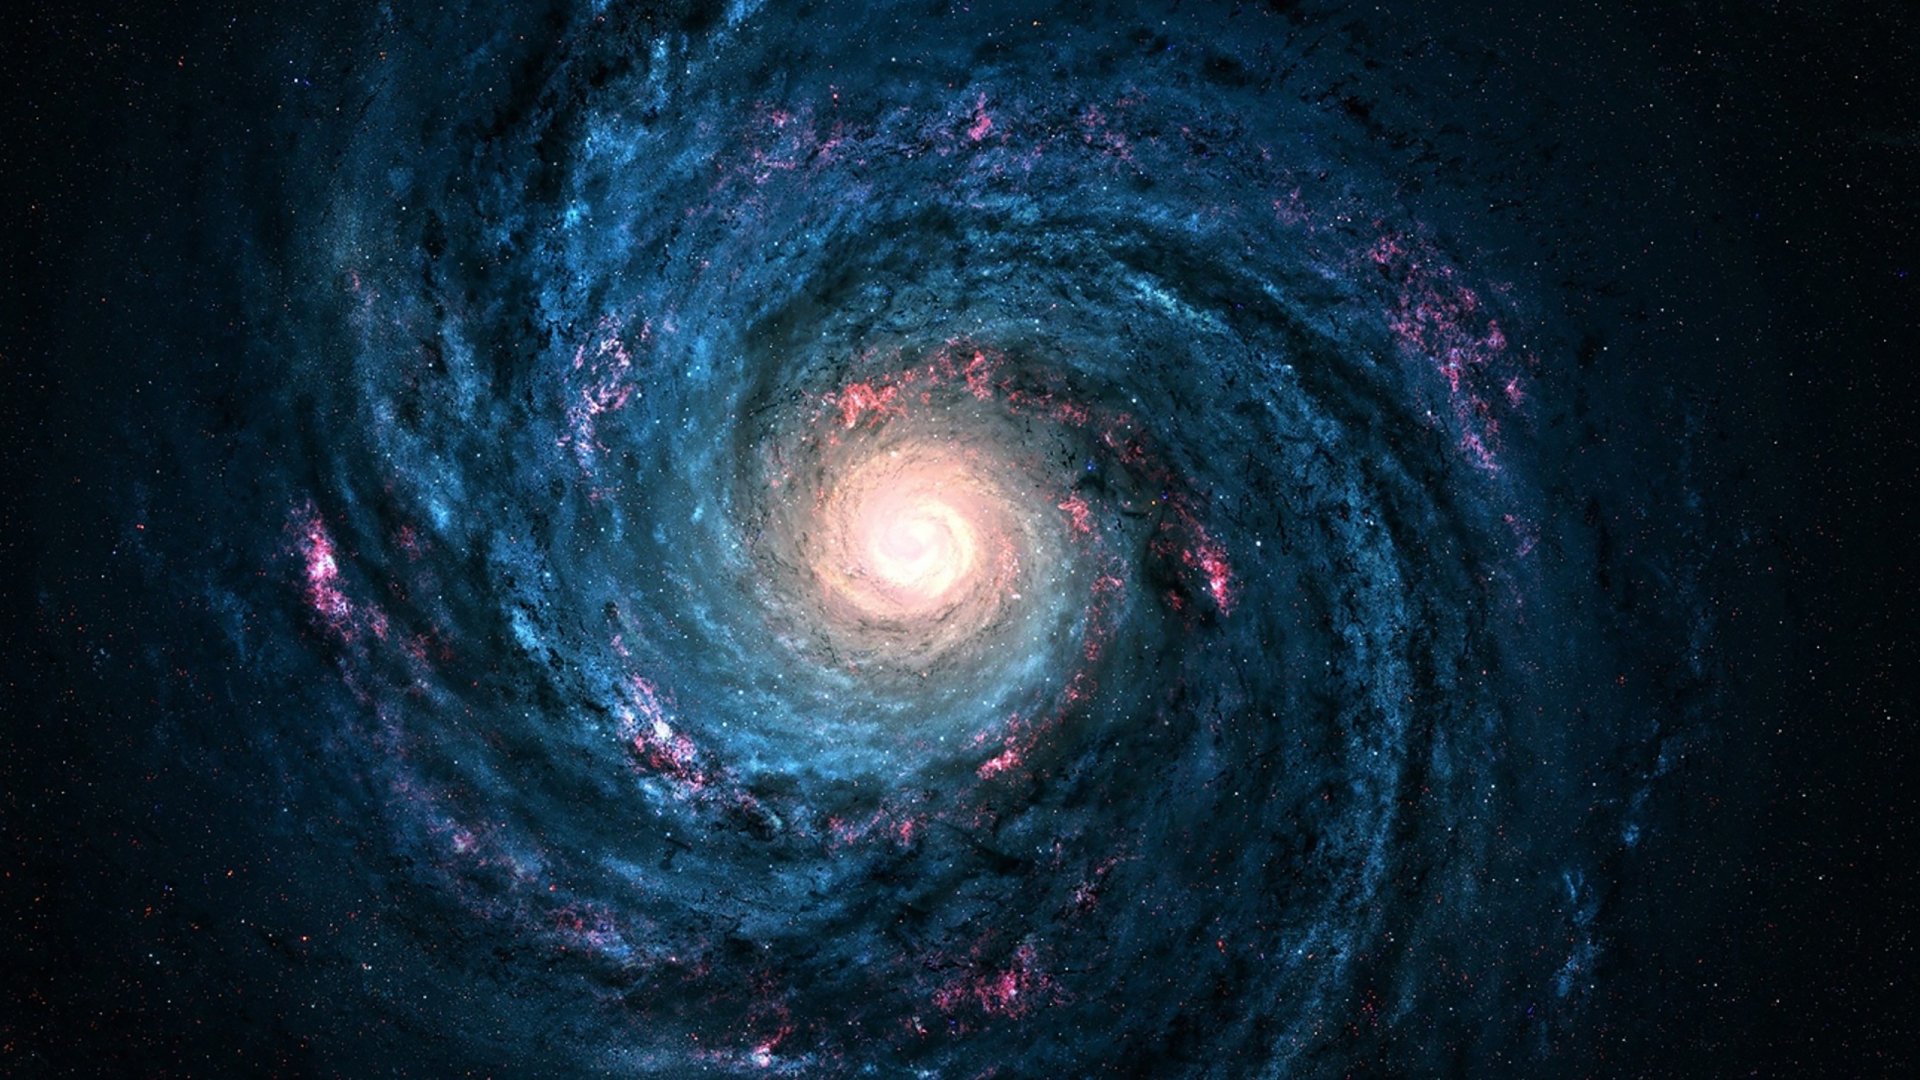 Hình nền Sci-Fi Galaxy HD: Khám phá những chi tiết đầy tuyệt vời và sống động của Vũ trụ với những bức ảnh Sci-Fi Galaxy HD thật sự tương đương với việc trải qua những cuộc phiêu lưu đầy kỳ diệu và tuyệt vời.